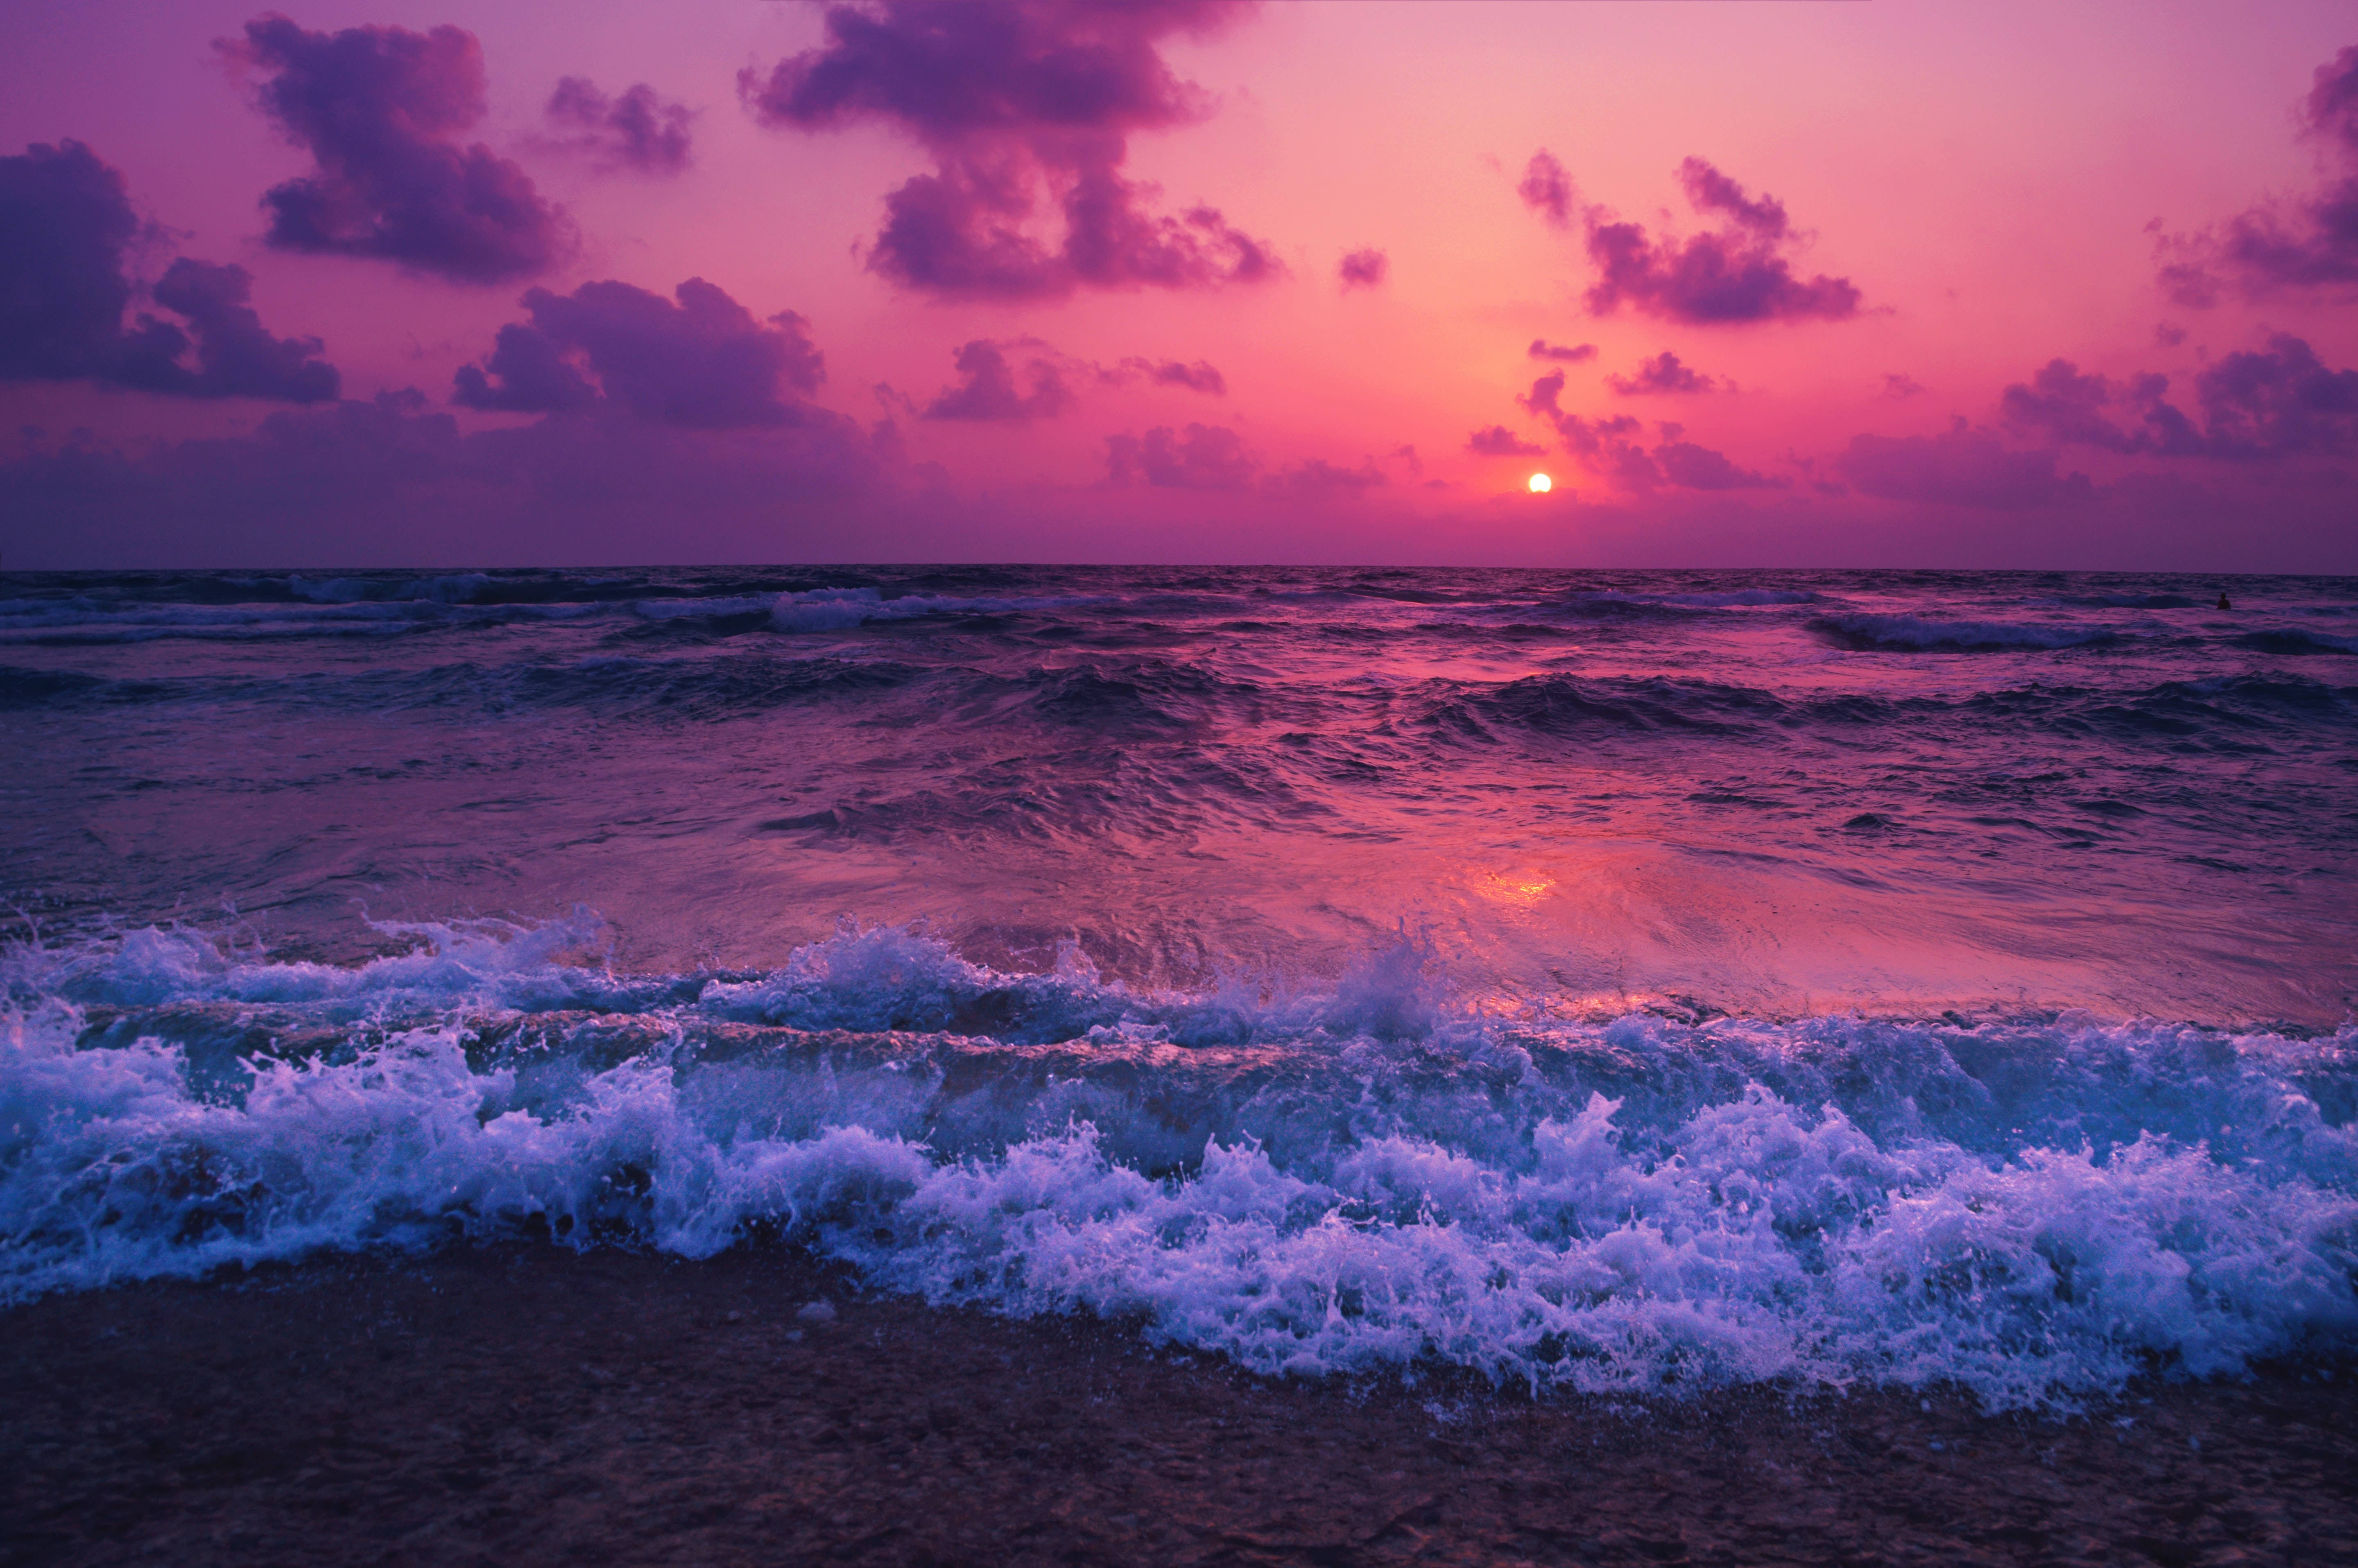 Aesthetic 1920x1080 Hd Beach Desktop Purple Sunset Foam